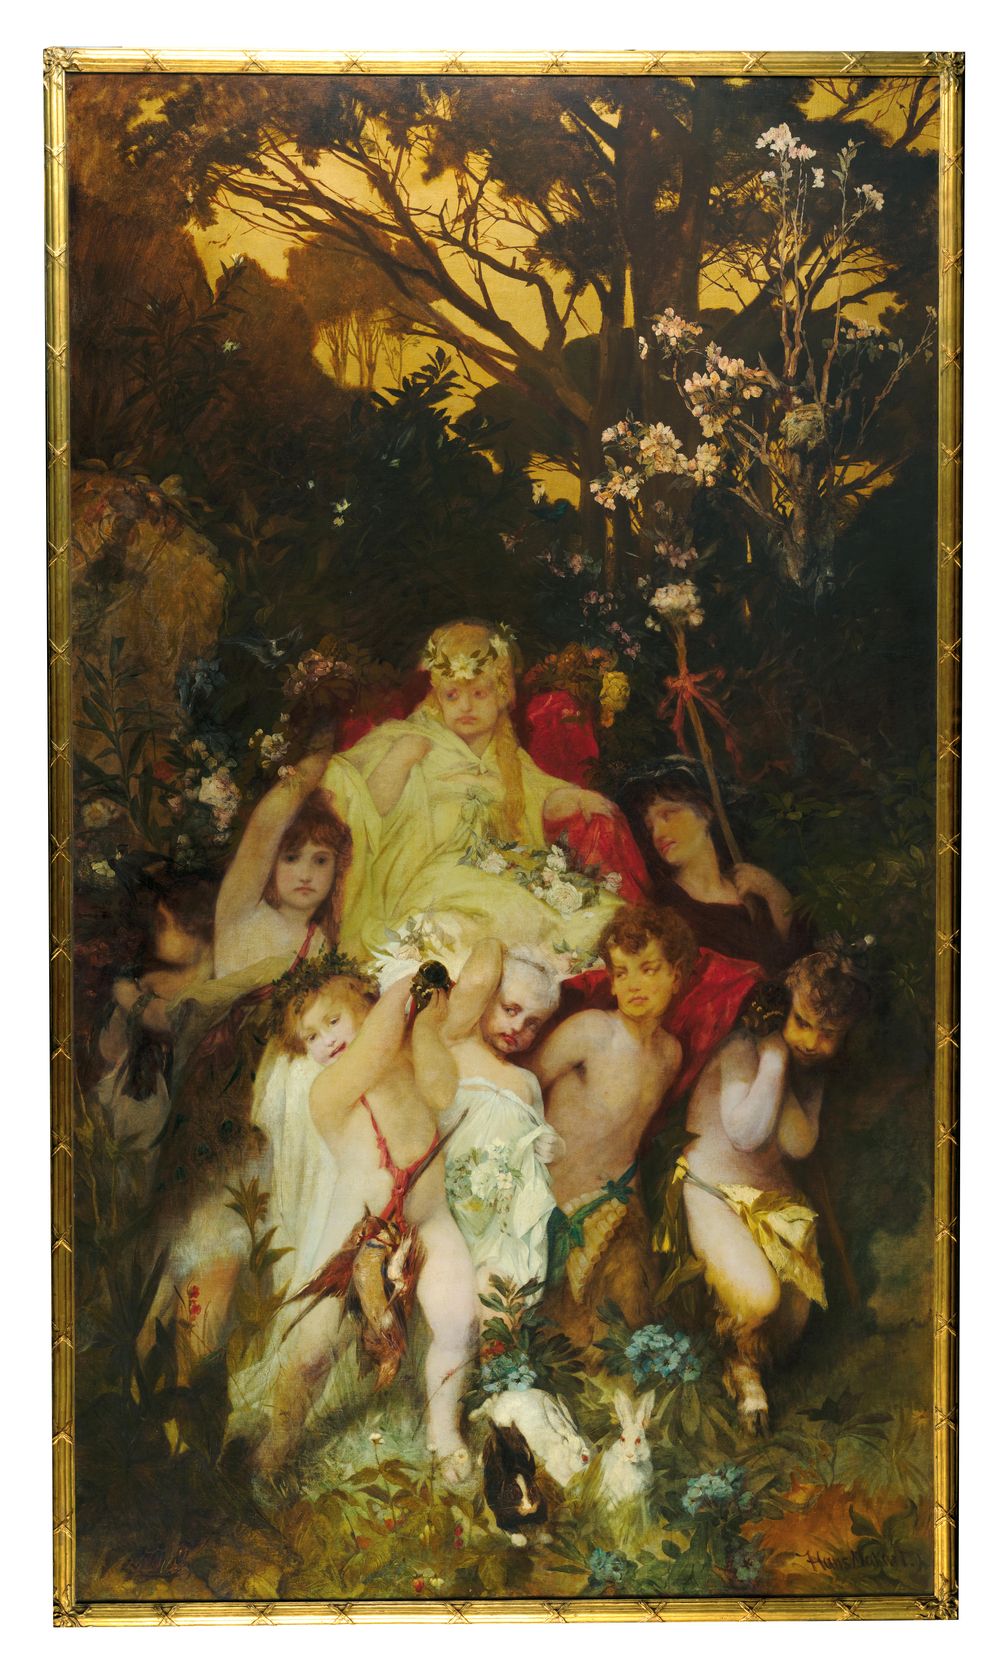 Hans Makart, Moderne Amoretten, Triptychon, signiert auf der Mitteltafel, Öl auf Leinwand, 292 x 167 cm, gerahmt Bild: Dorotheum Fotograf: Dorotheum